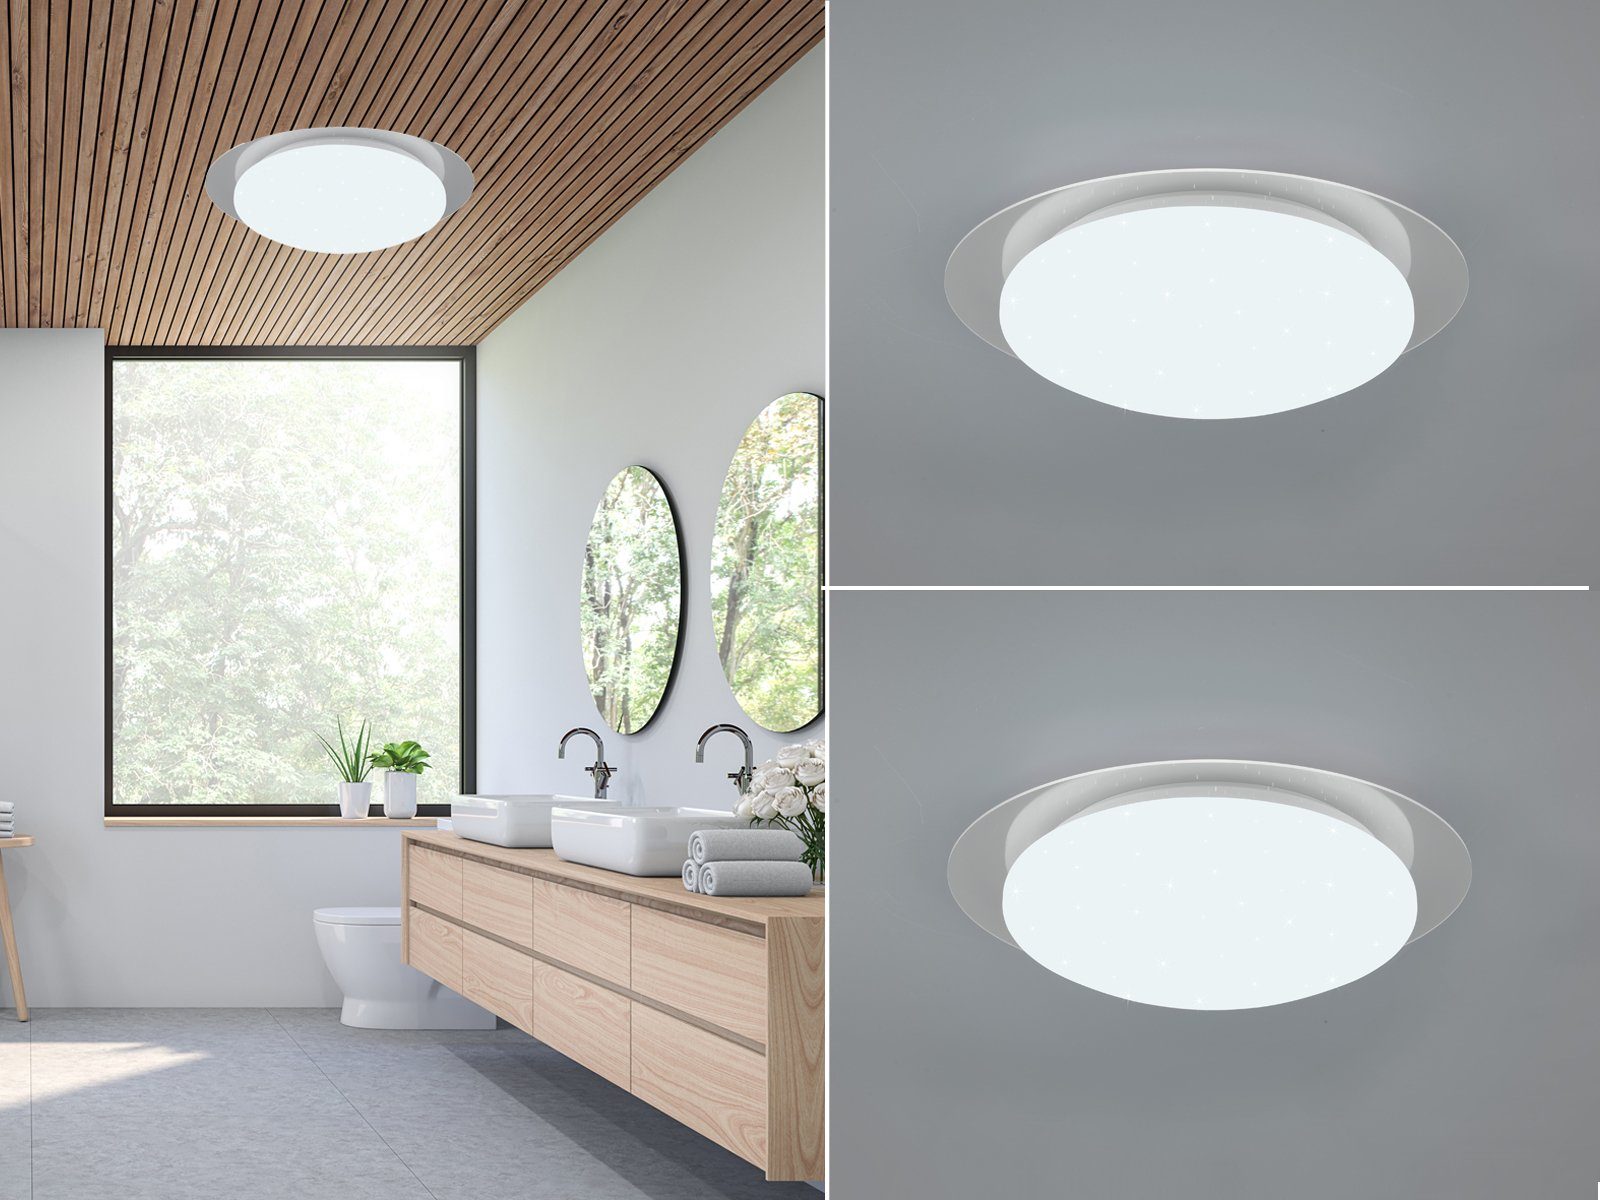 LED Decken Lampe weiß Bewegungs Sensor Gäste Bad Beleuchtung ALU Flur Leuchte 